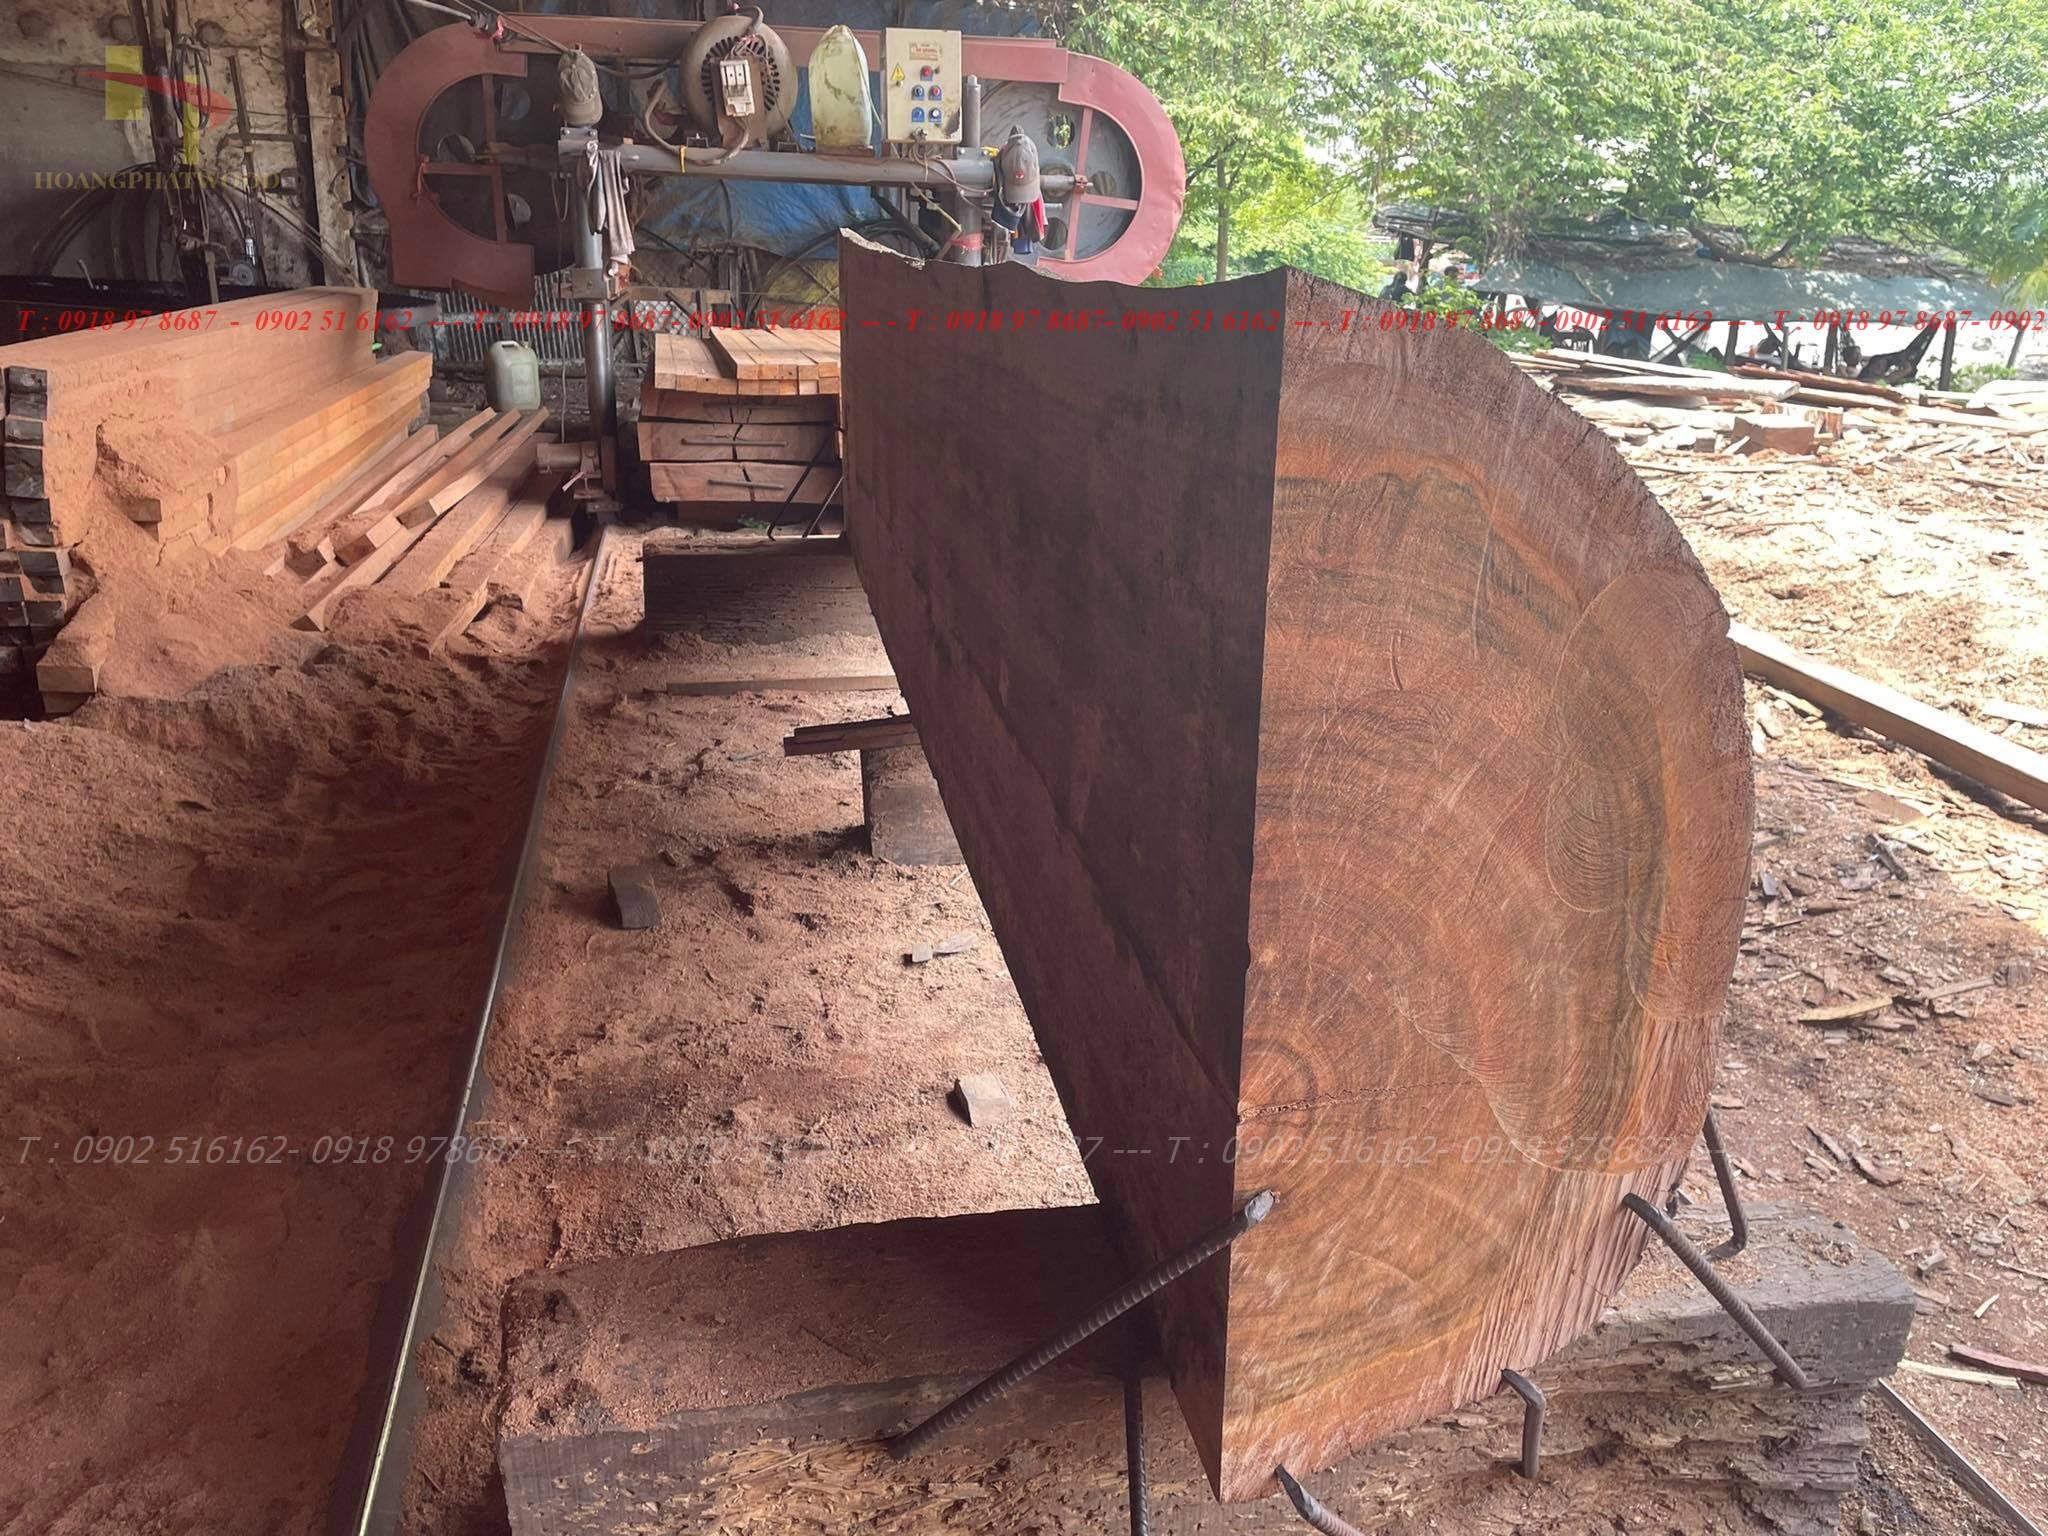 Sàn gỗ Dầu Úc xẻ theo quy cách yêu cầu